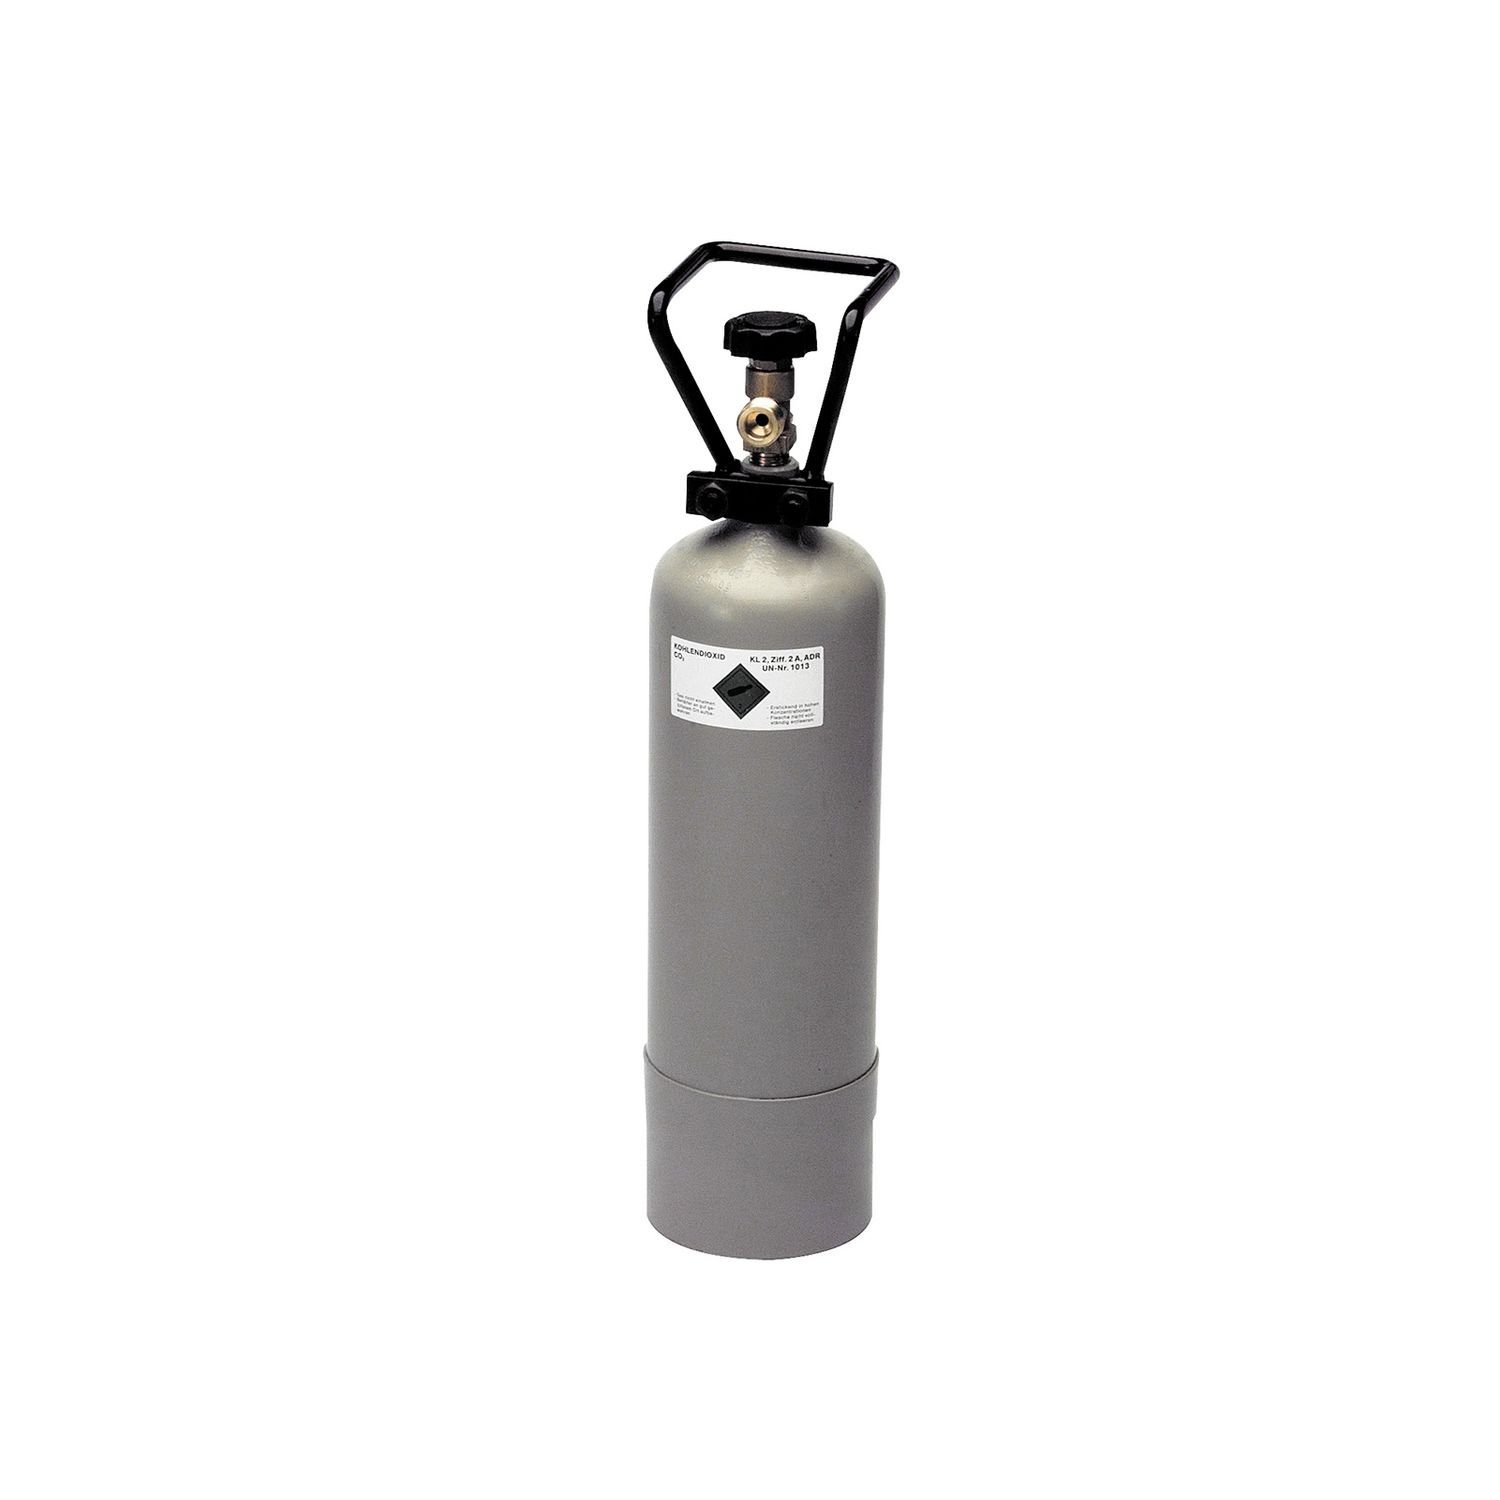 ich-zapfe CO₂-Zylinder CO2 Flasche, Kohlensäure Flasche, Kohlendioxid Gasflasche - 2,0 kg